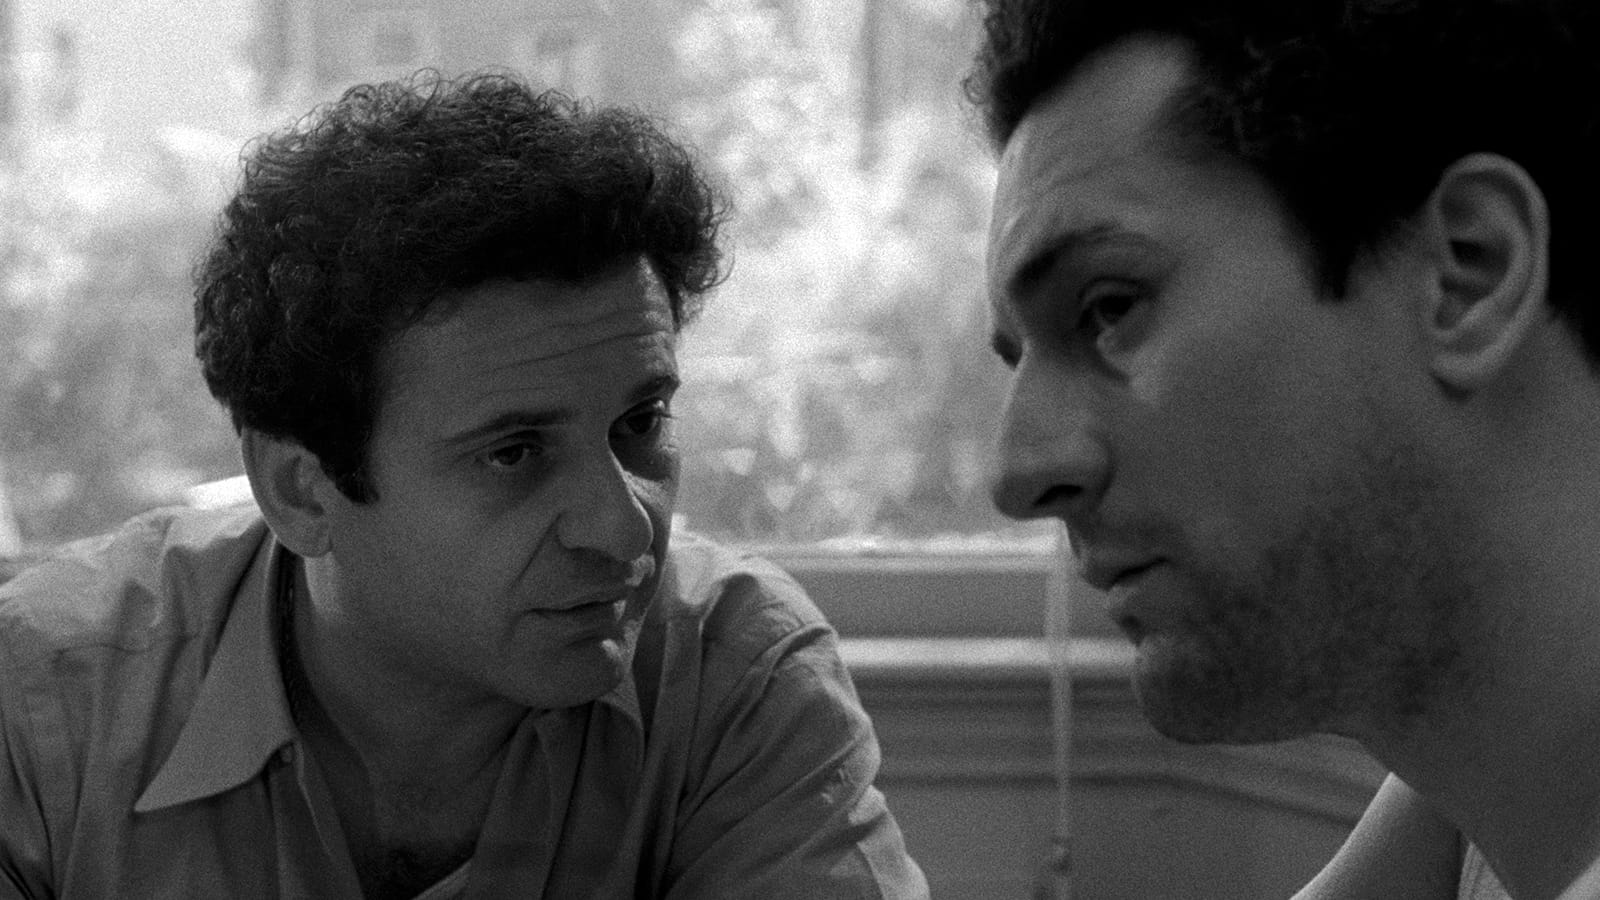 「幫我一個忙，我要你一拳打落我的臉。」Jake La Motta 說。
「幫你自己一個忙，趕她走。」Joey La Motta 說。
怎樣才算是幫站在擂台上、怒不可遏的壞男人一個忙？
要理解《狂牛》（Raging Bull），首先得知道它是馬田史高西斯（Martin Scorsese）懷著「這將是我最後的電影，事業的終結」1 的心情完成的作品。此前他經歷了製作《紐約，紐約》（New York, New York）（在片場與劇組關係緊張、完全即興的對白演出難以拼湊完整故事）及私人生活（與傳奇女星 Liza Minelli 於拍攝期間搭上，互相展開背叛伴侶的婚外情）的災難，電影票房與評論皆告失敗、與妻子離婚、甚至因此沉淪染上毒癮，幾乎喪命。就在史高西斯住院休養期間，Robert De Niro 鼓勵他振作並將 Jake La Motta 的傳記拍成電影。在此嚴峻的背景下，史高西斯稱《狂牛》是他傾盡所有、像神風敢死隊（kamikaze）不顧一切而拍成的作品 1。於是，我們可以想像，那個只有黑白色彩、一地汗水與血液的擂台，是遠離拳擊類型片象徵的志氣和奮鬥意義。史高西斯非要用《狂牛》力挽狂瀾，帶出甚麼面對人生的積極意義，而是要透過 Jake 自尋痛苦的職業（拳手）、不自覺的自毁傾向，表現他（們）內心 / 精神性的自我懲罰。